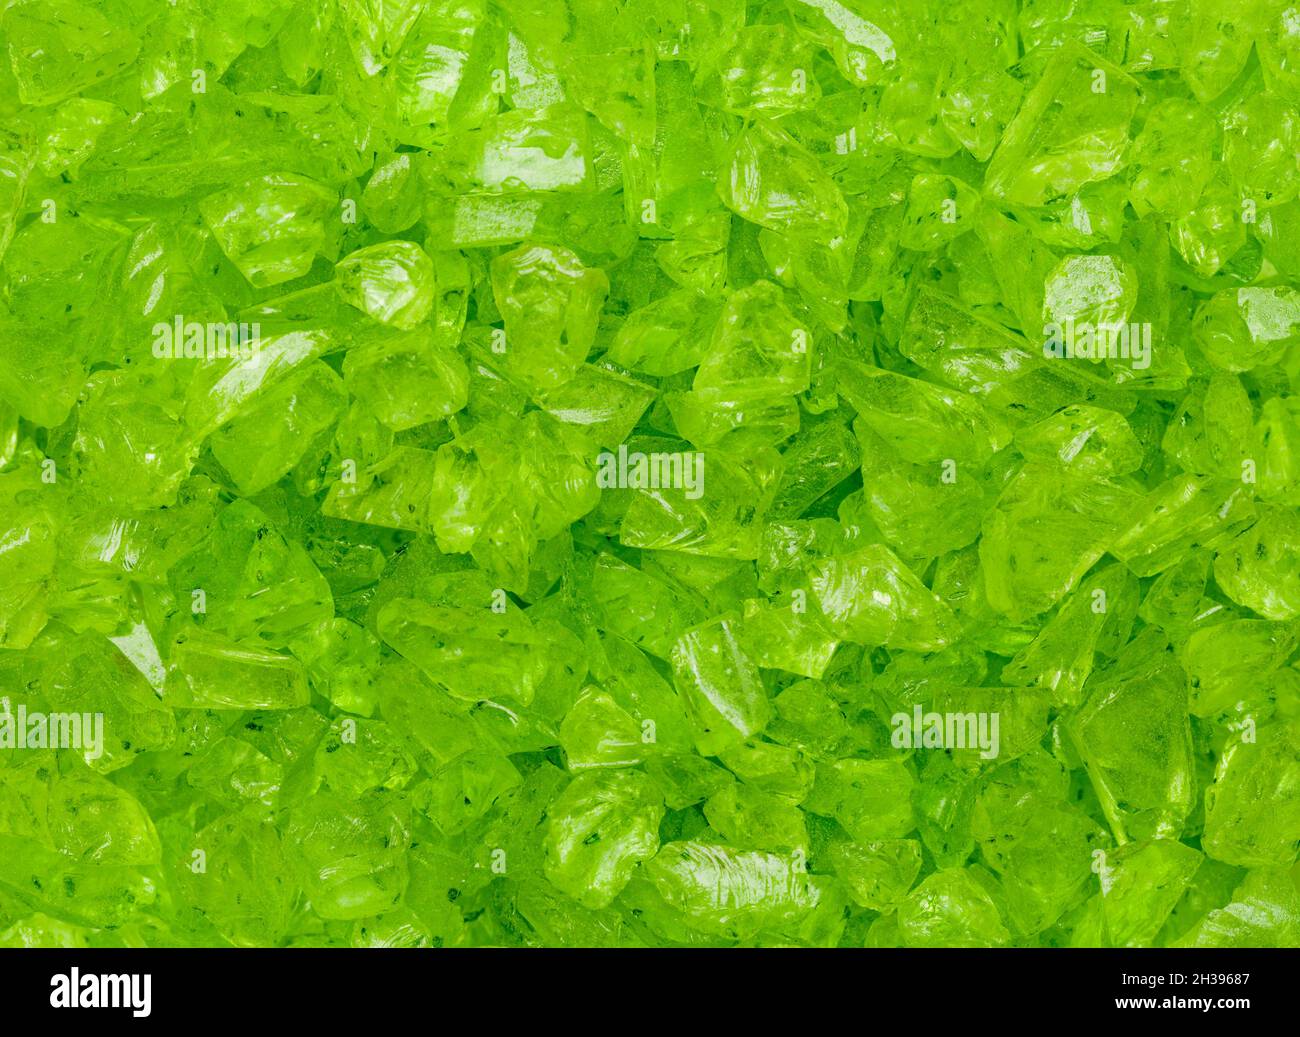 Morceaux de verre cassés verts dans un arrière-plan de pile. Banque D'Images